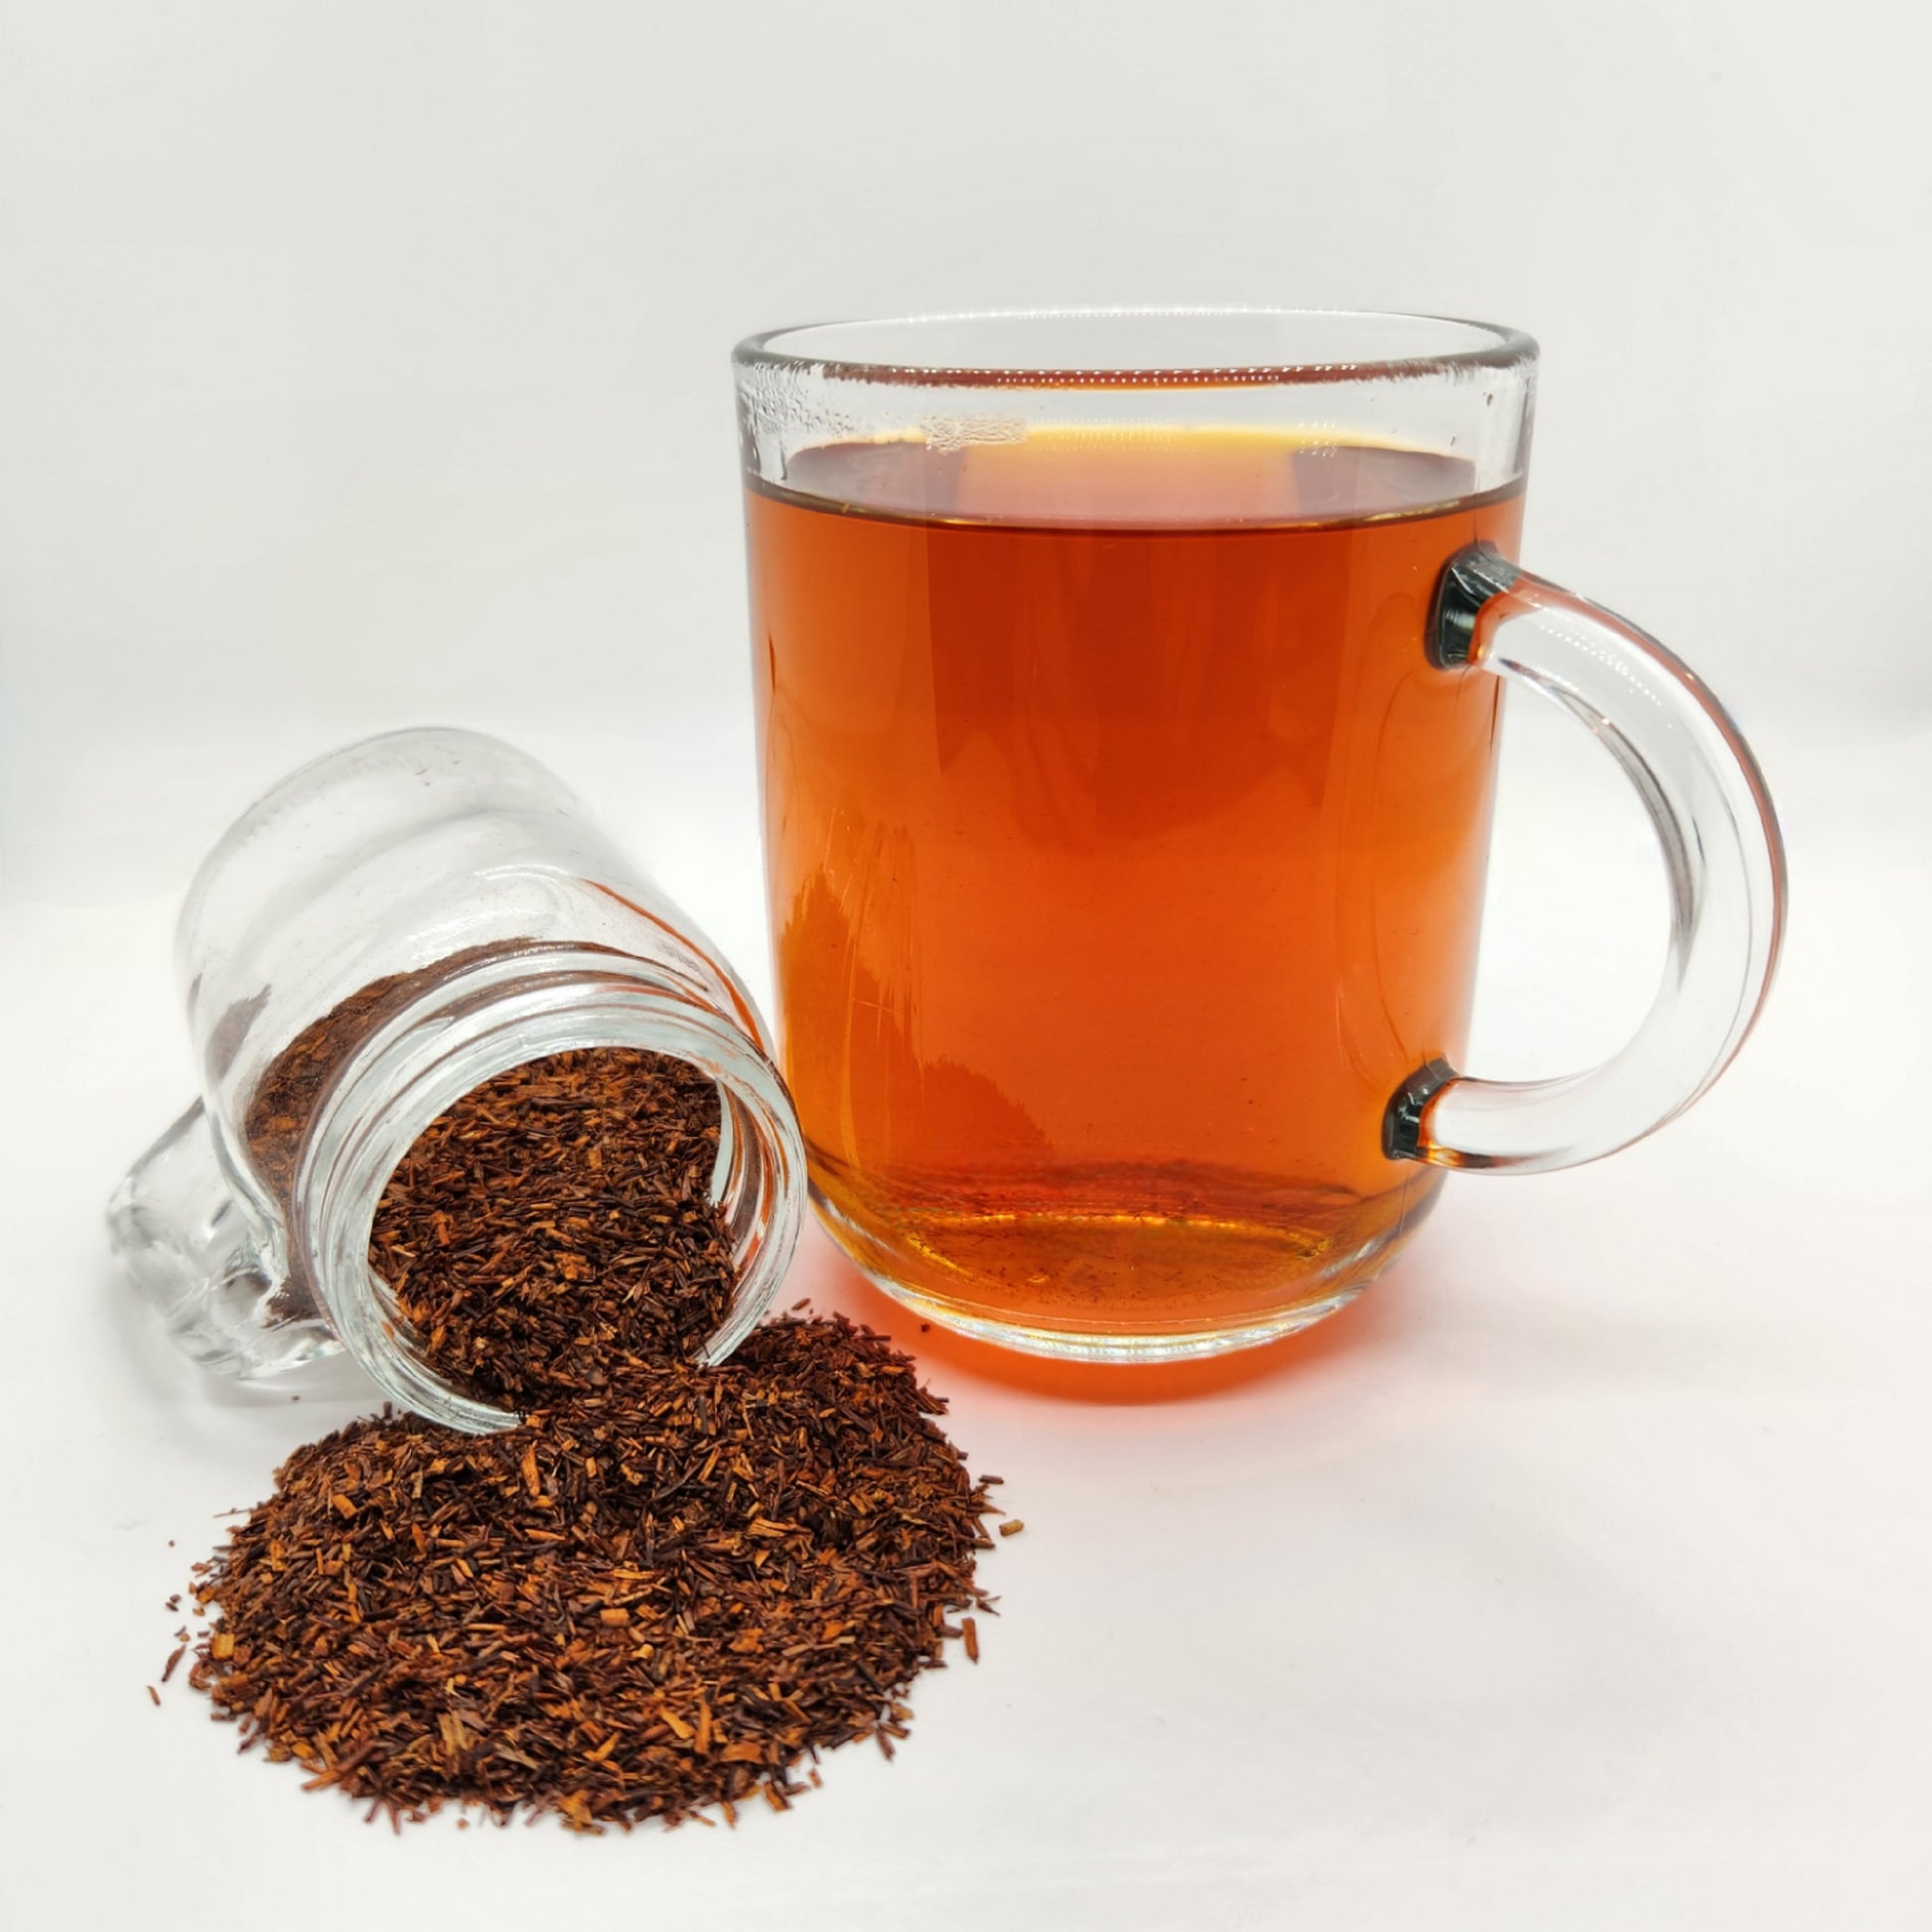 Berty's Brews - Loose leaf rooibos tea